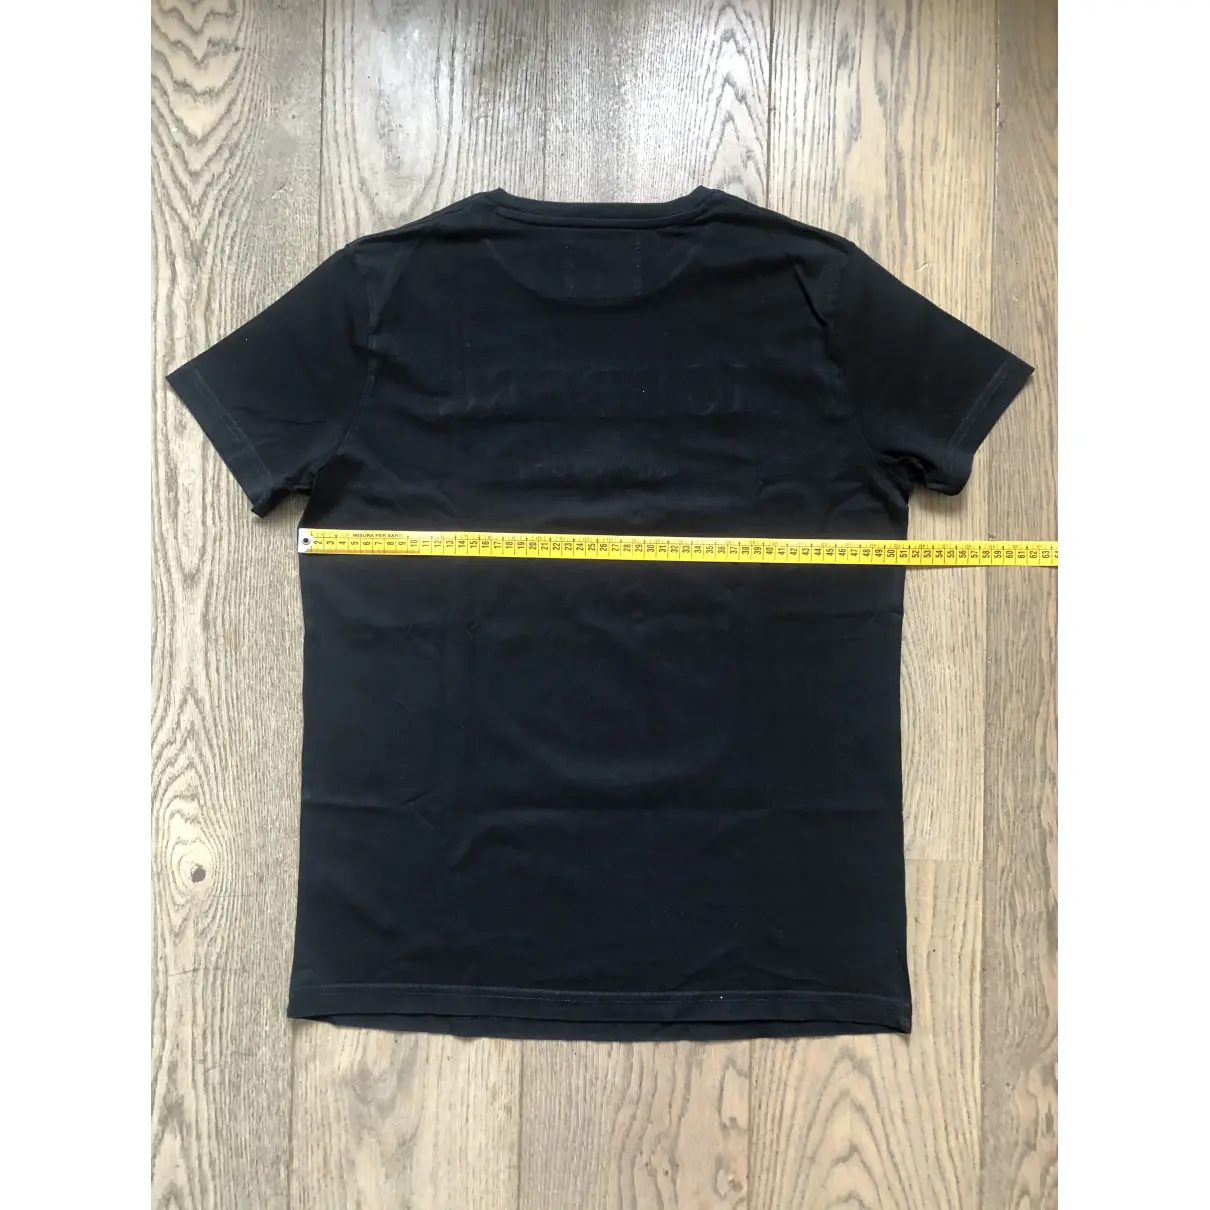 Buy Iceberg Black Cotton T-shirt online